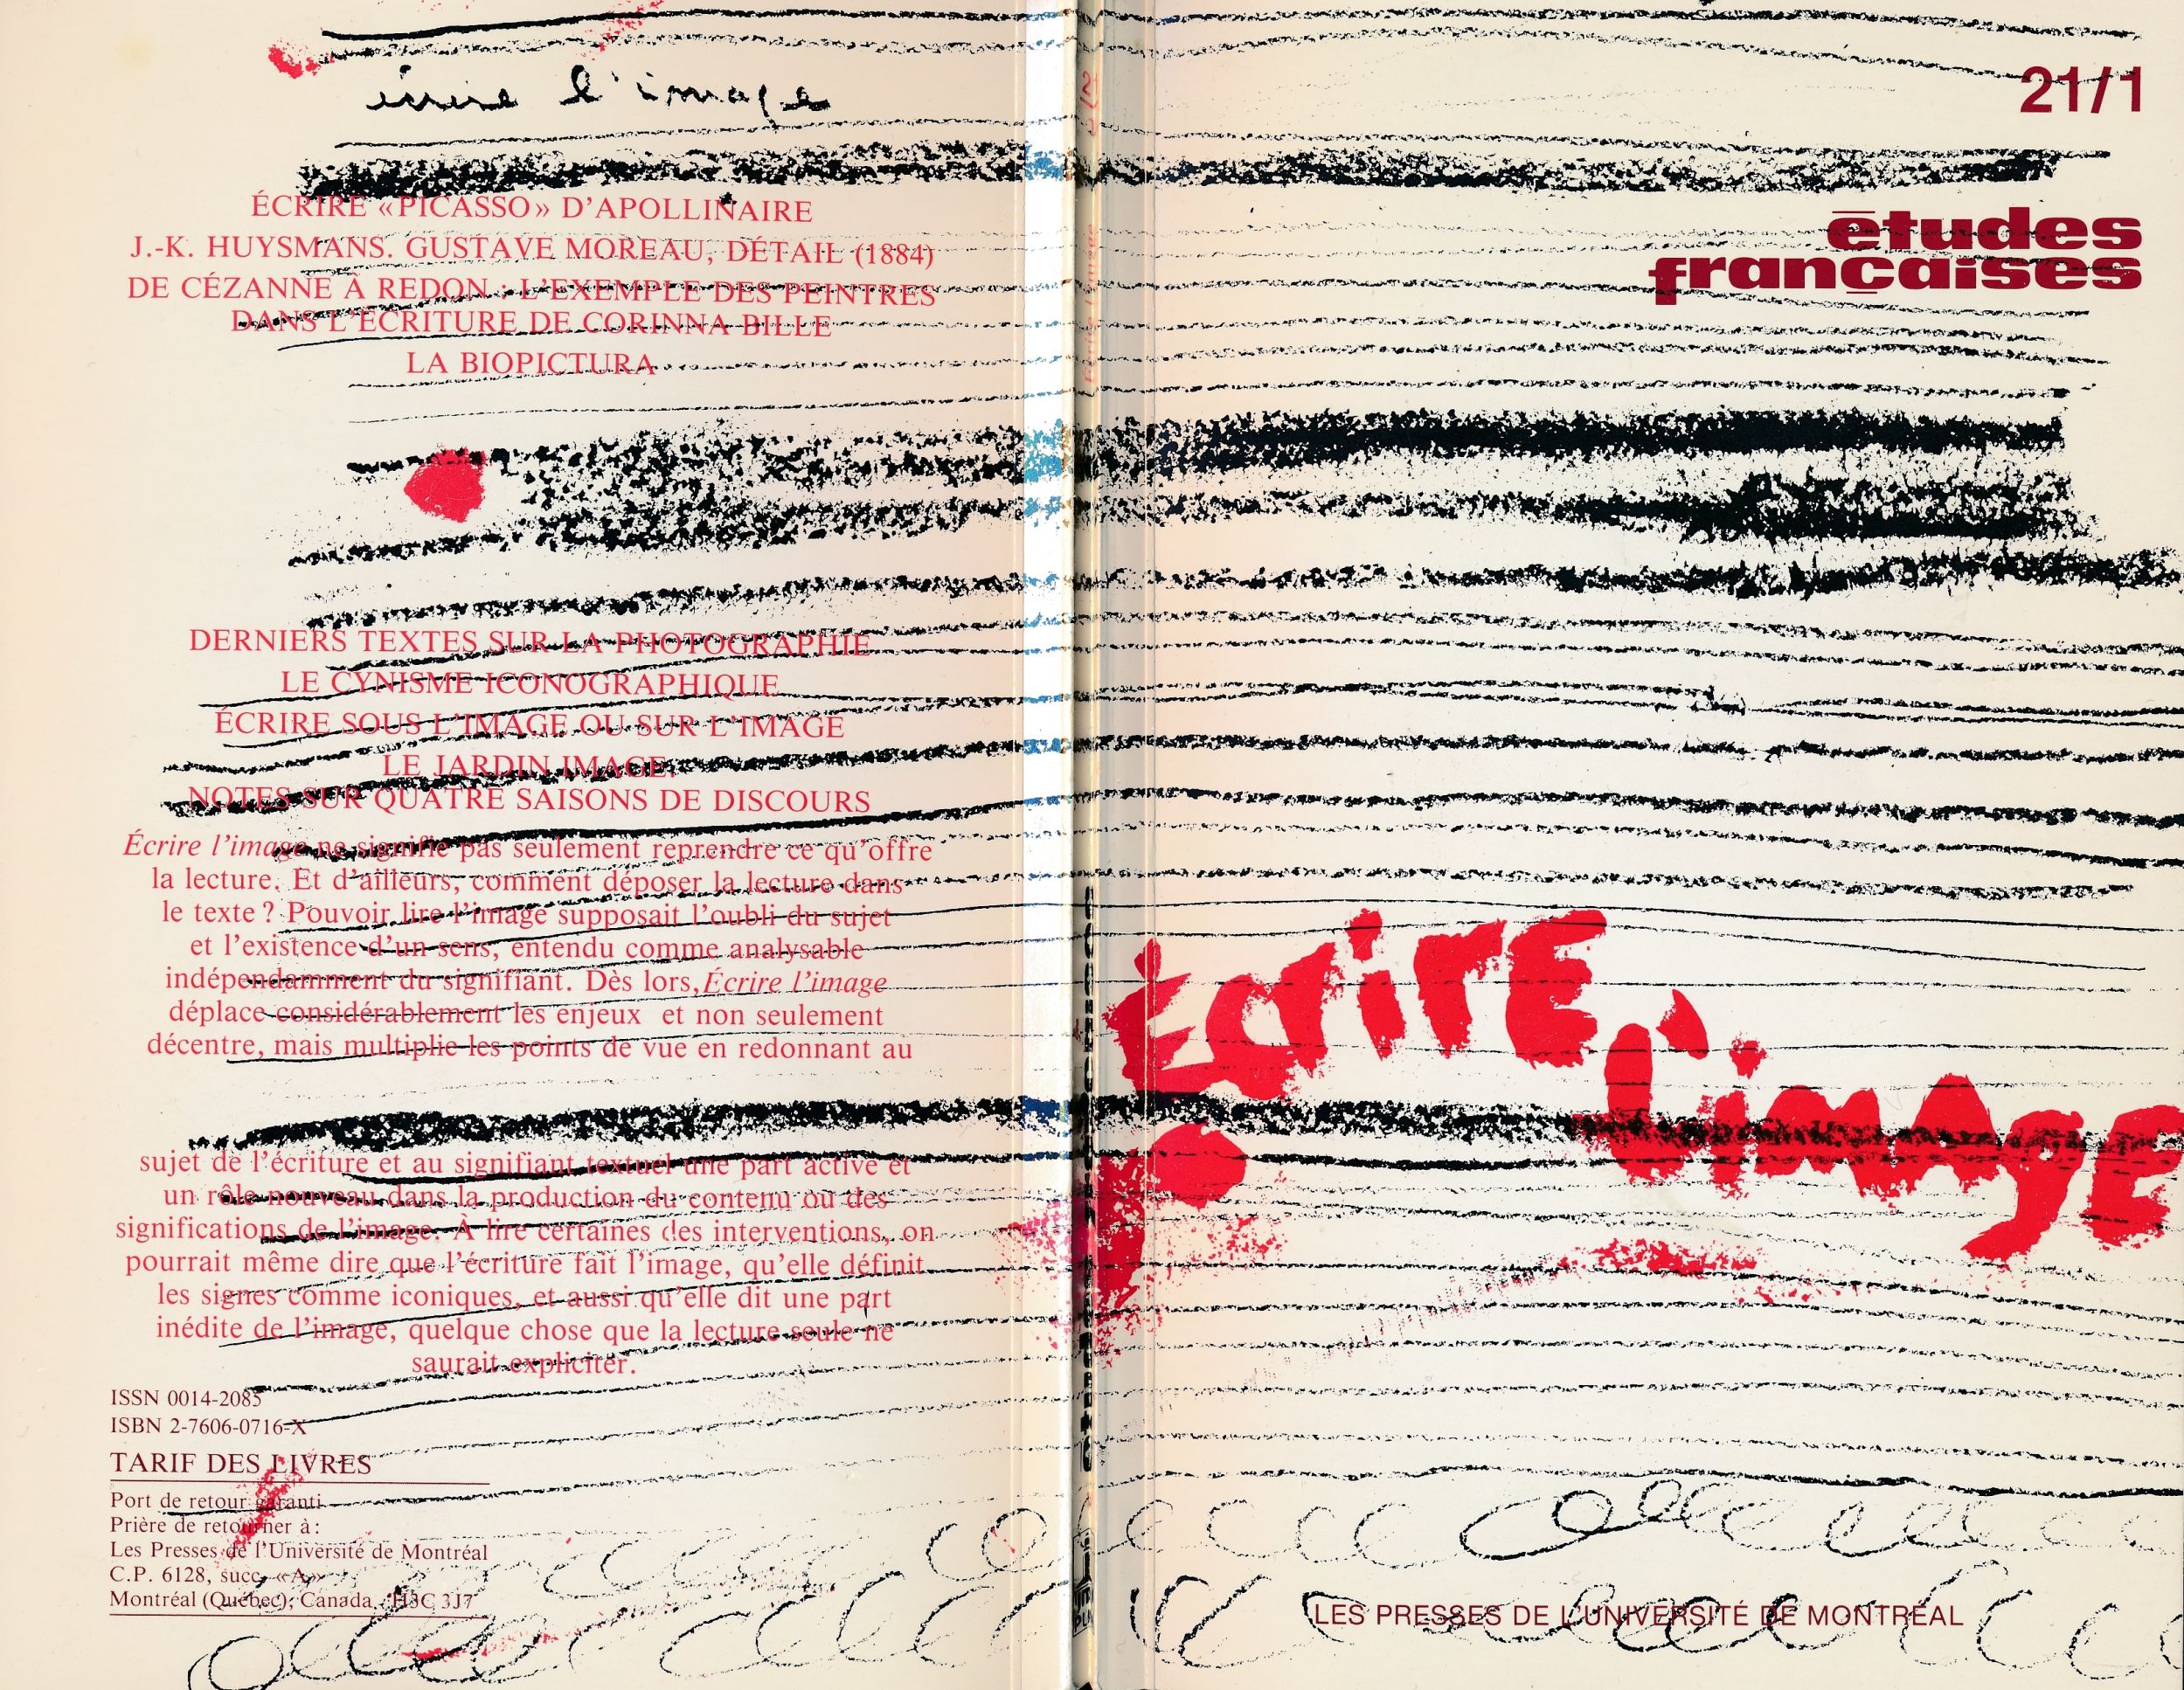 Couverture et 4ième de couverture du périodique Études françaises (Montréal), vol. 21, n° 1, printemps, 1985.